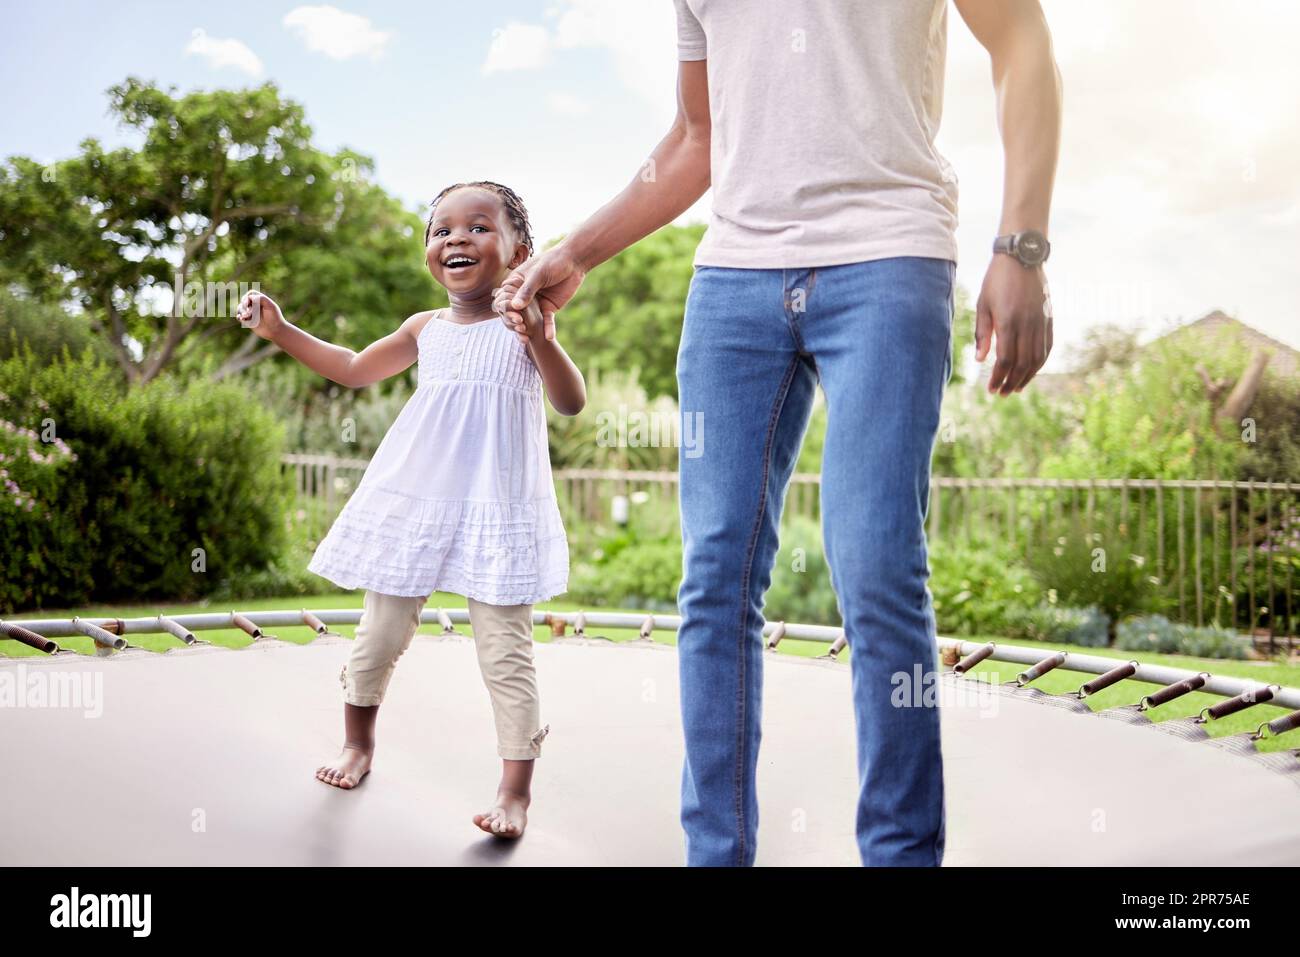 Ich halte dich nicht in der Hand, damit du hoch springen kannst. Aufnahme eines kleinen Mädchens, das mit ihrem Vater im Freien auf einem Trampolin springt. Stockfoto